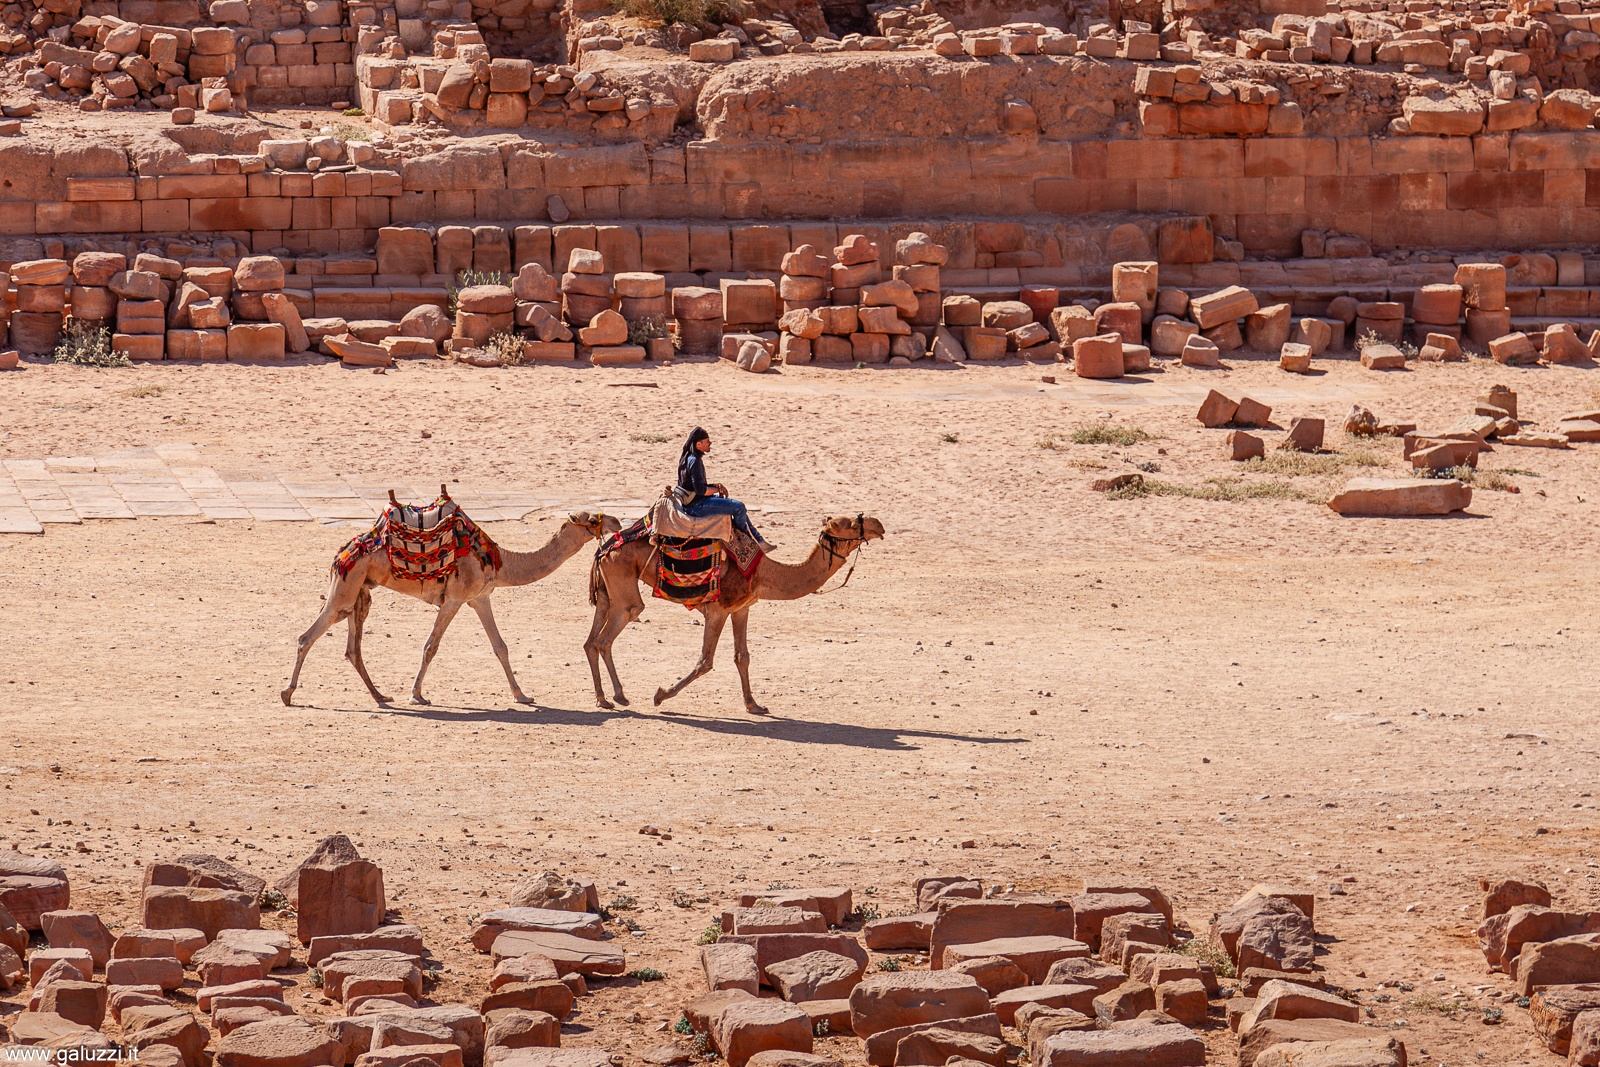 In un sondaggio fatto nel 2007 su 100 milioni di persone, Petra è risultata essere la prima tra le Sette meraviglie del mondo moderno